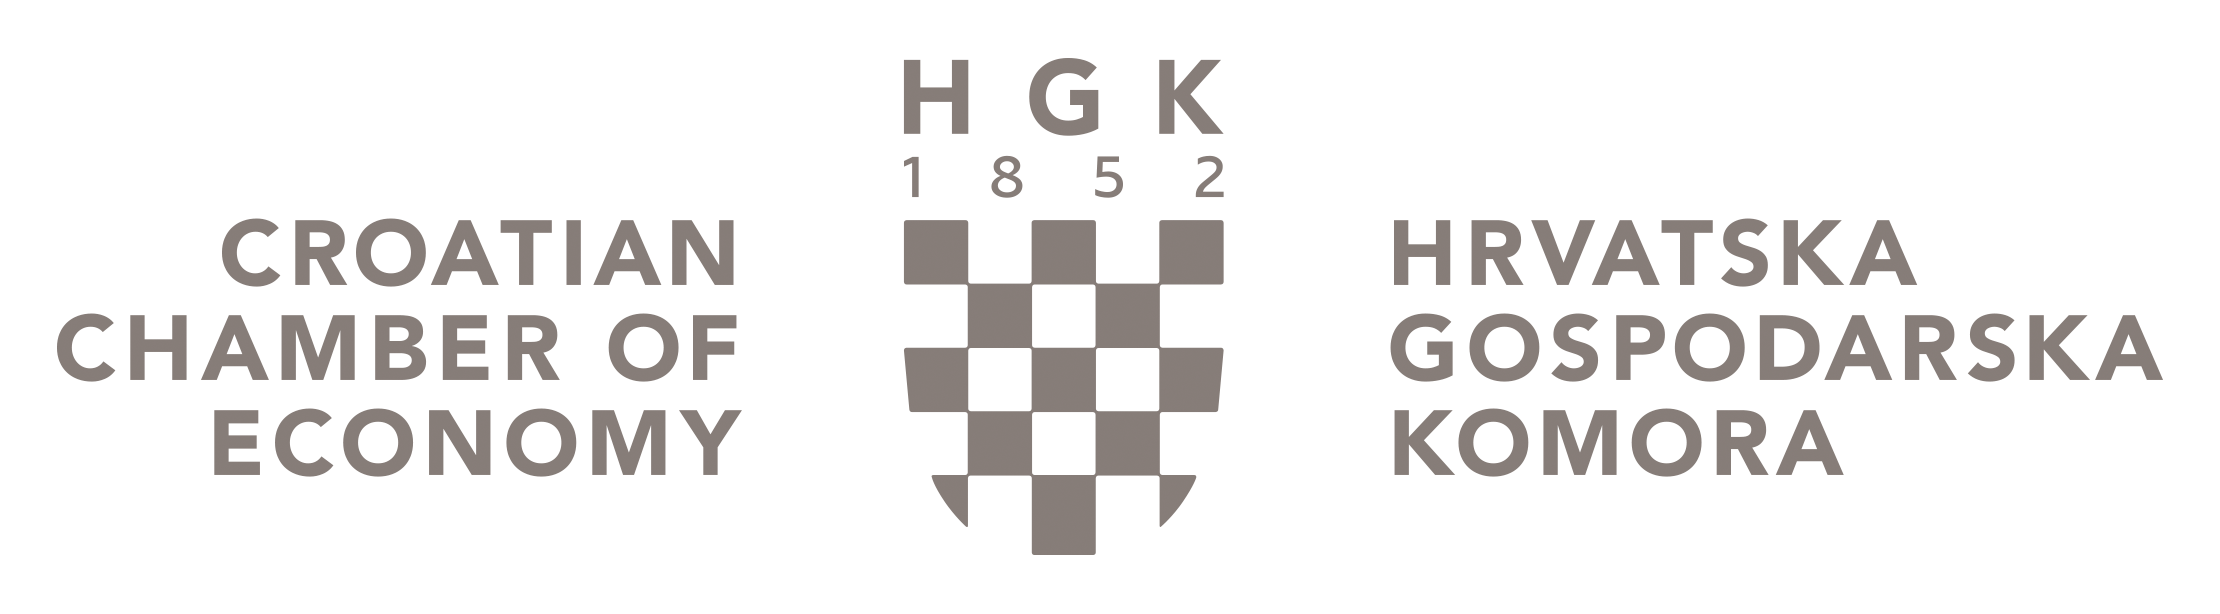 HGK logo